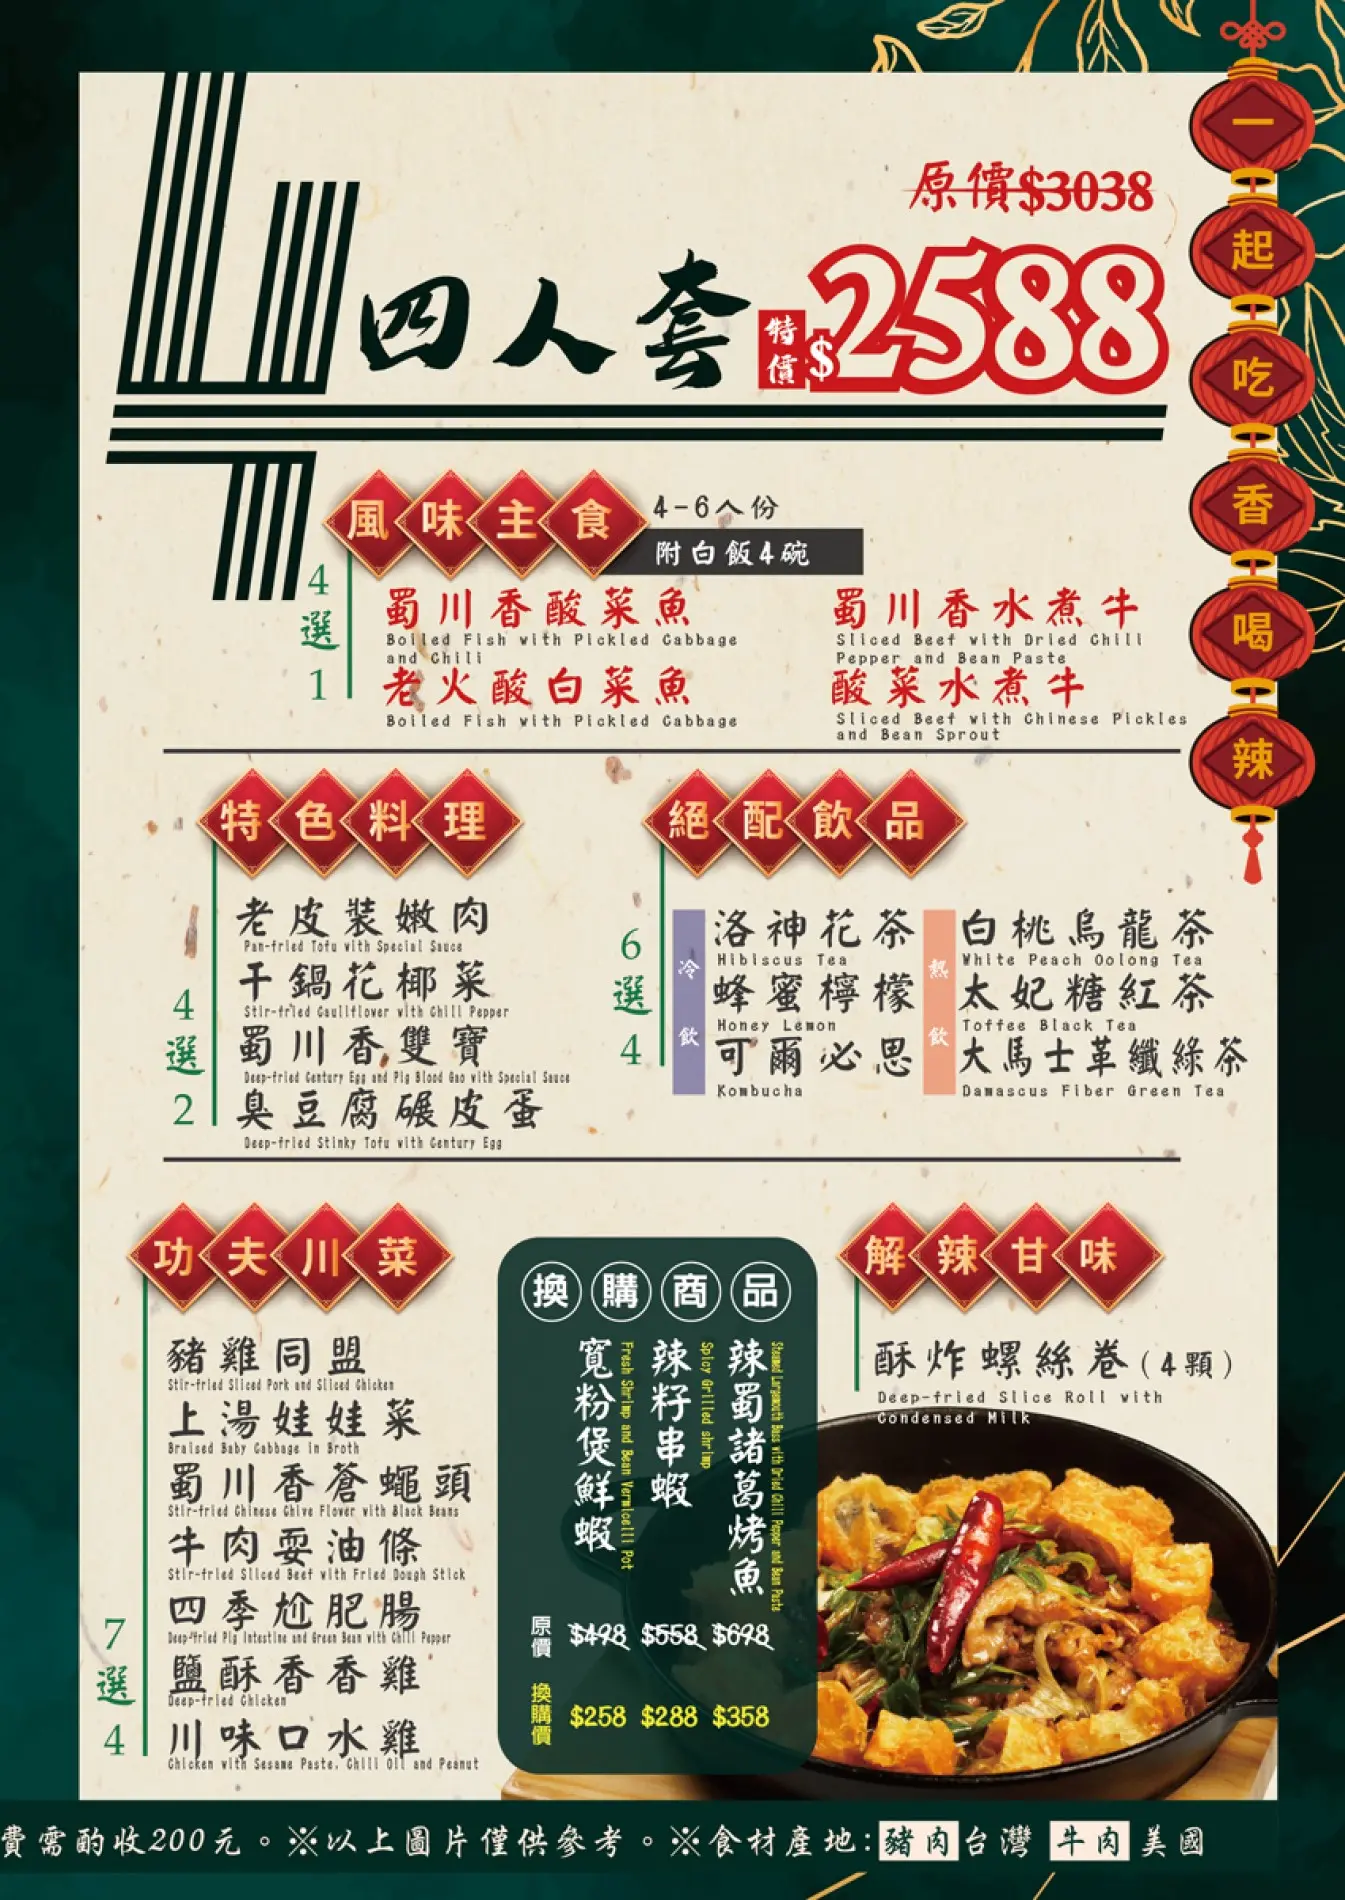 「蜀川香酸菜魚」四人套餐菜單